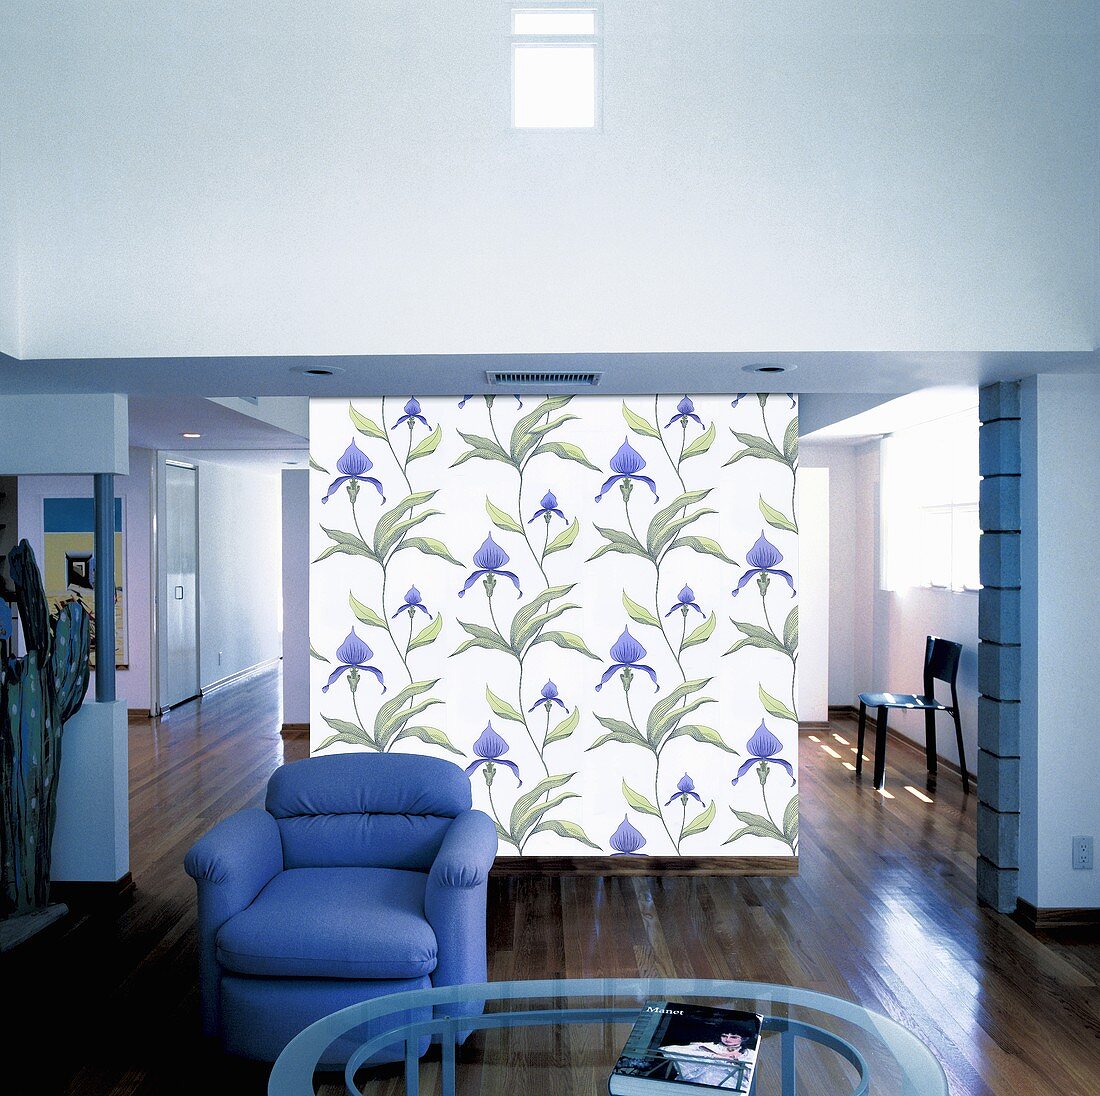 Leinwand-Tapete als Raumteiler hinter einem blauen Sessel